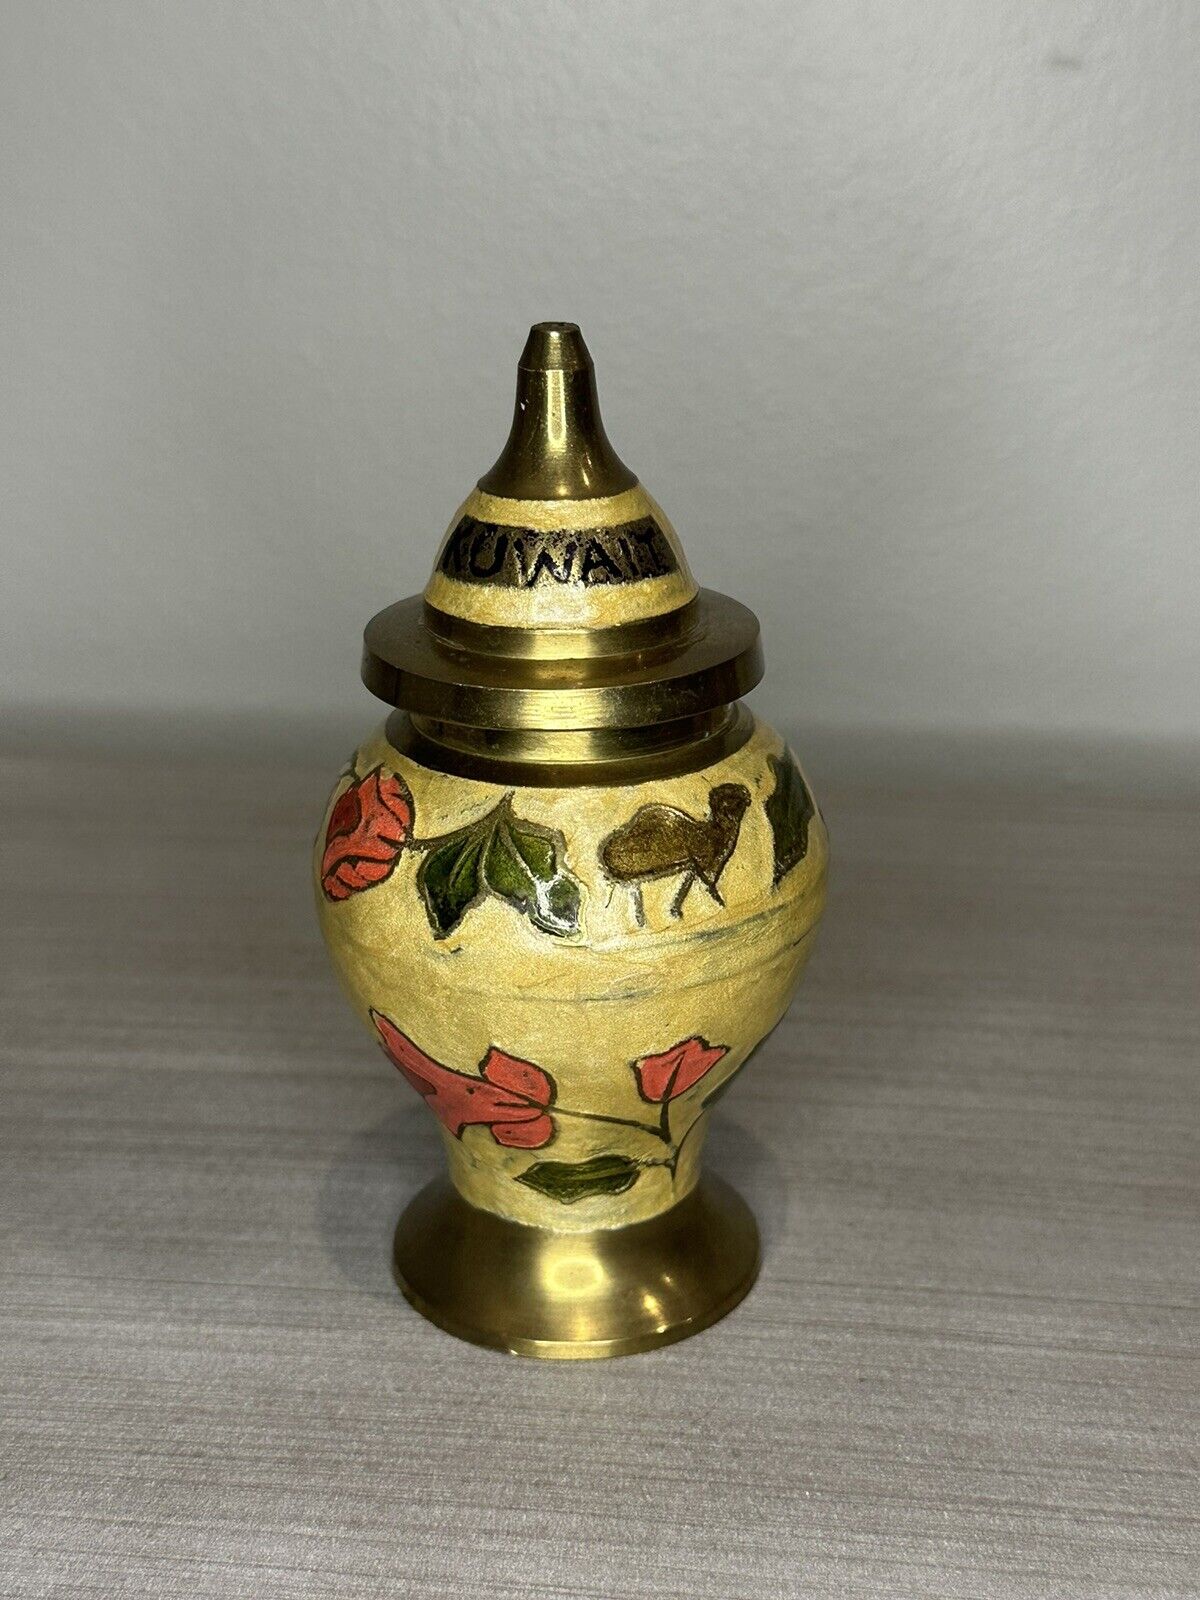 Vintage Solid Brass Hand Painted Ginger Jar Urn Vase With Lid